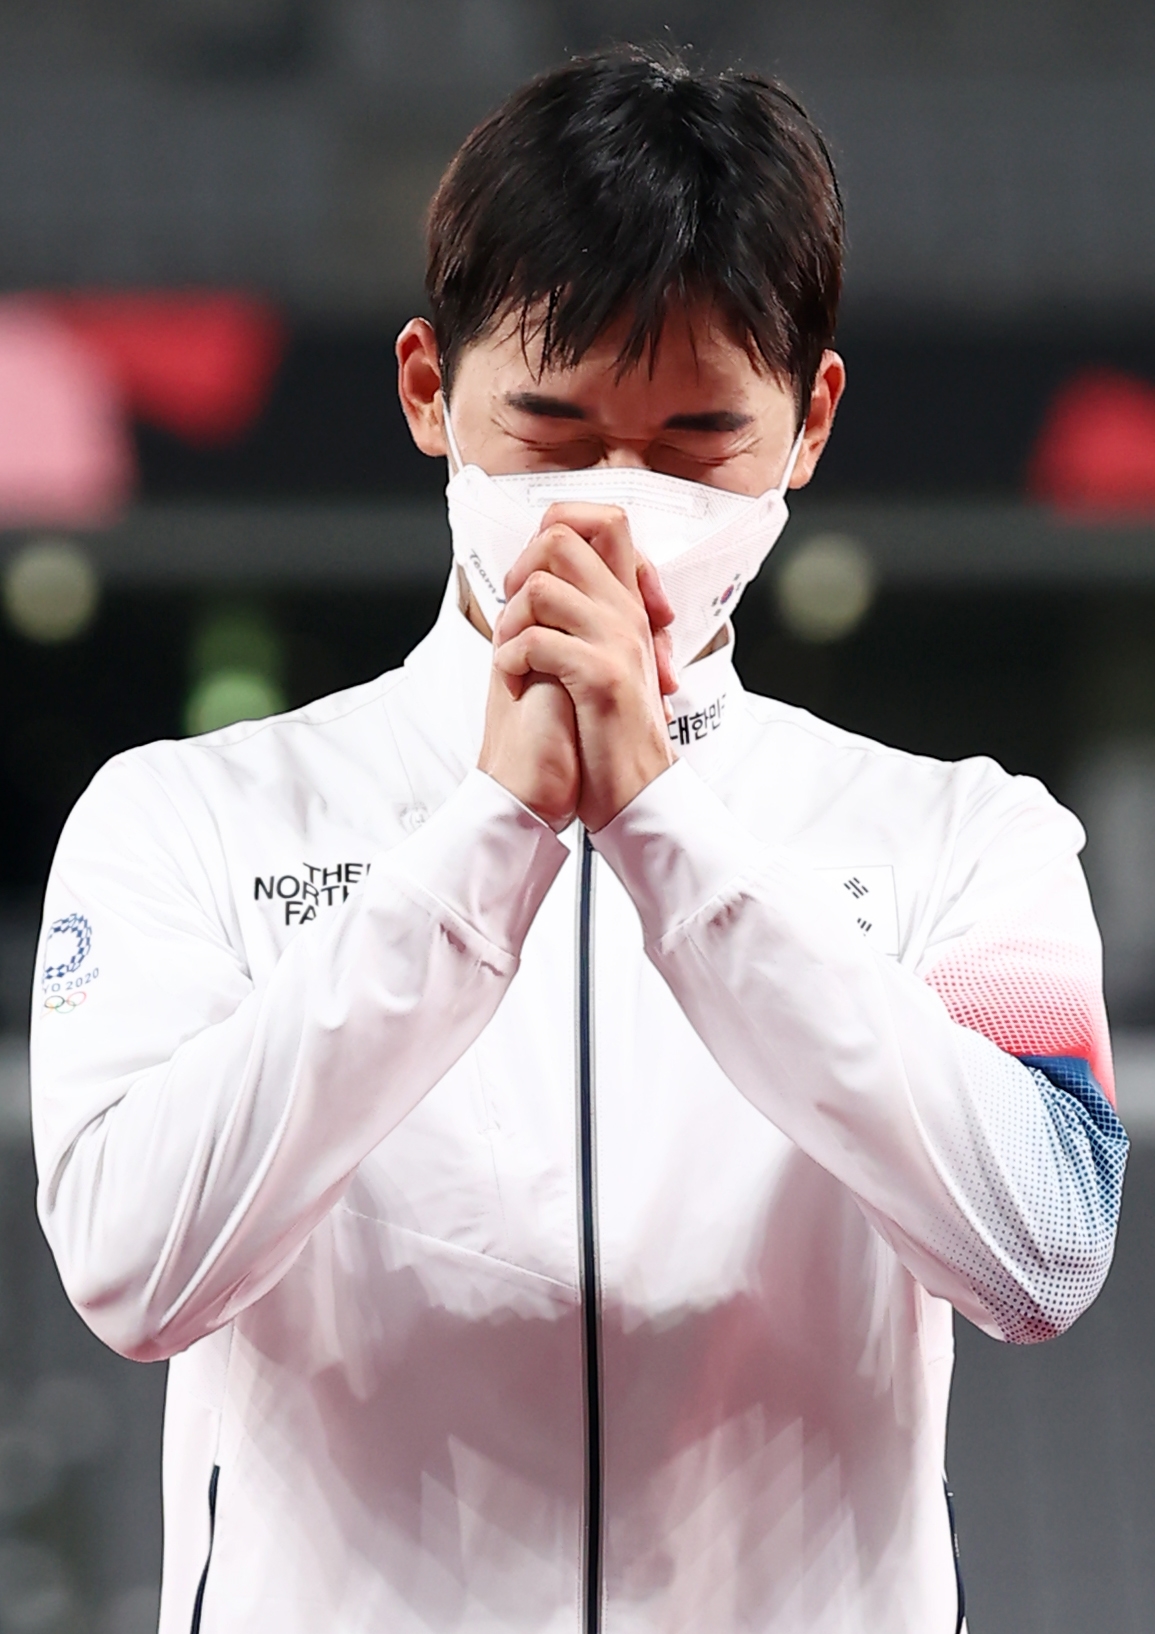  도쿄올림픽 남자 근대5종에서 동메달을 획득한 한국 전웅태가 7일 일본 도쿄스타디움에서 열린 시상식에 오르기 앞서 두 손을 모으고 있다.